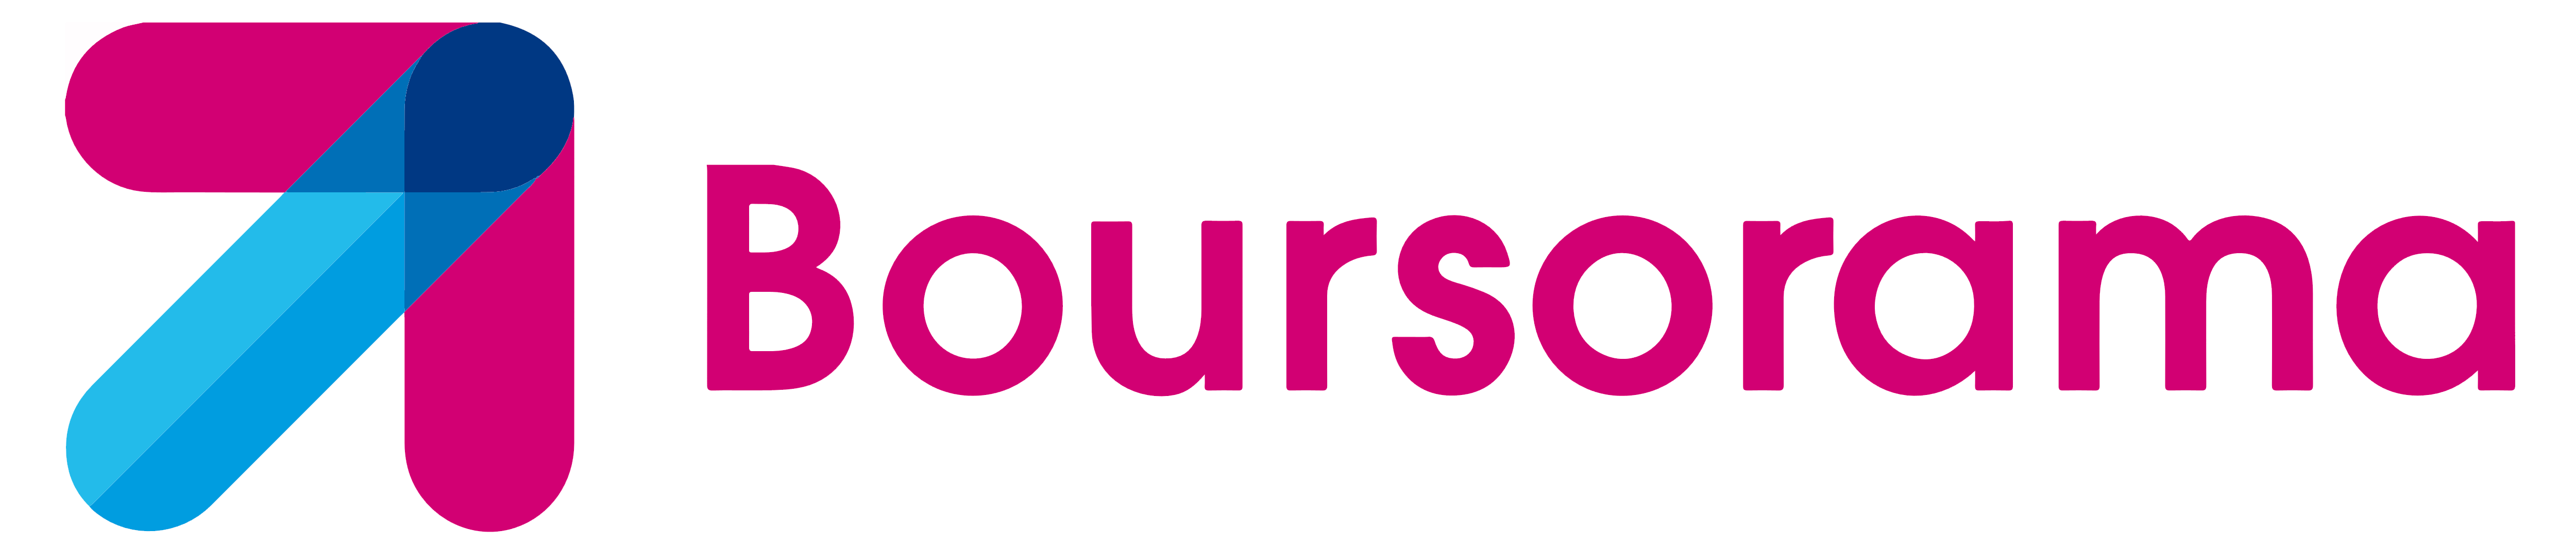 Boursorama Brand Logo